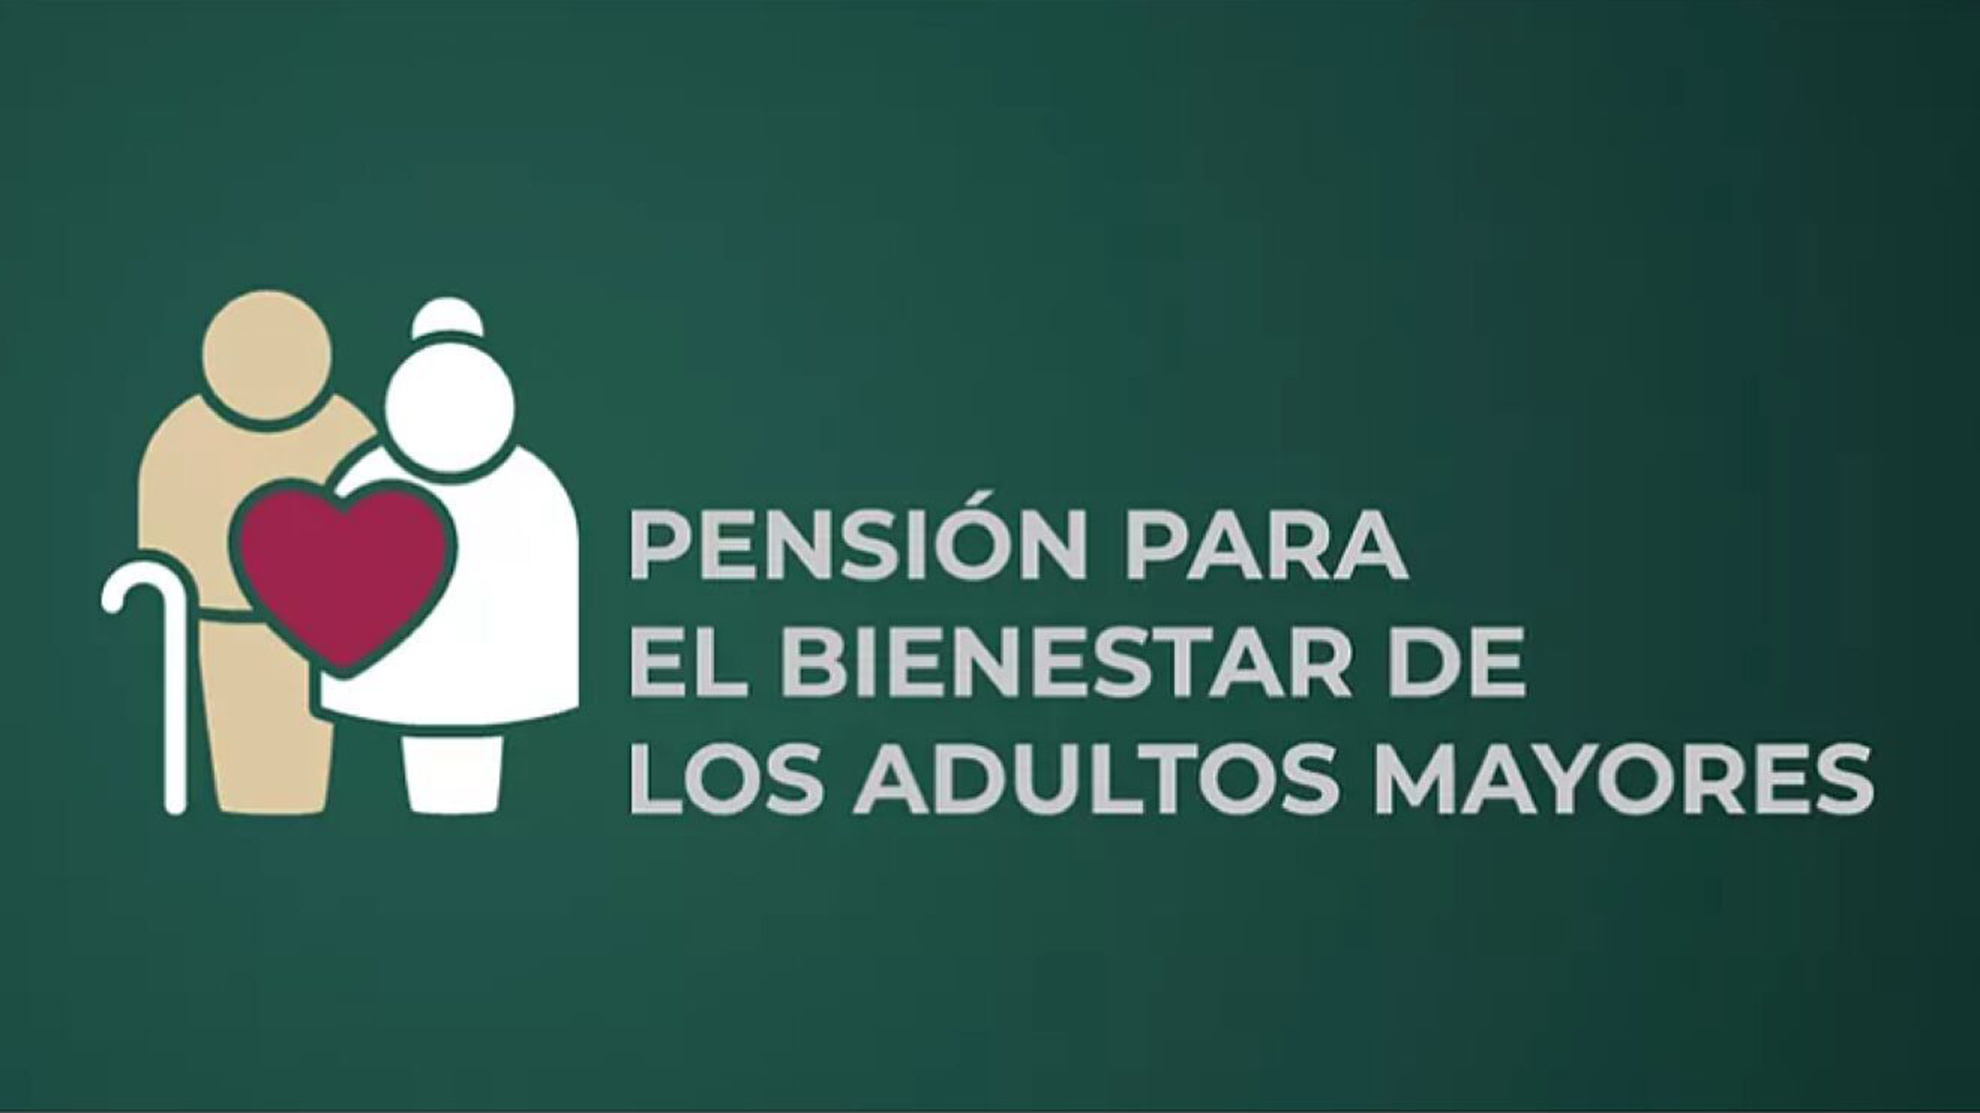 La Pensión de Adultos mayores llegará en el mes de septiembre y octubre.